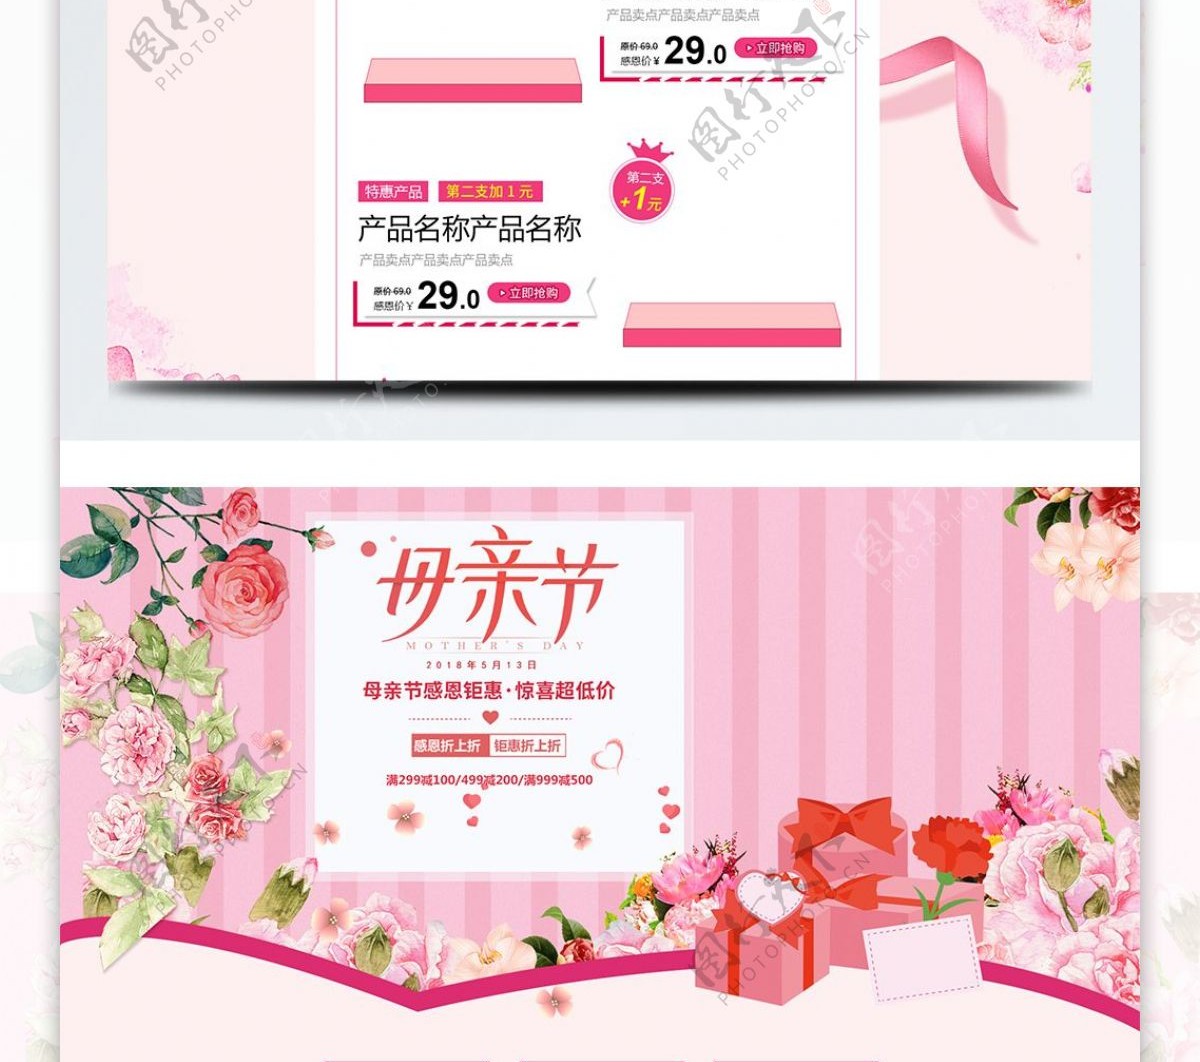 粉色浪漫唯美电商促销母亲节彩妆首页模板